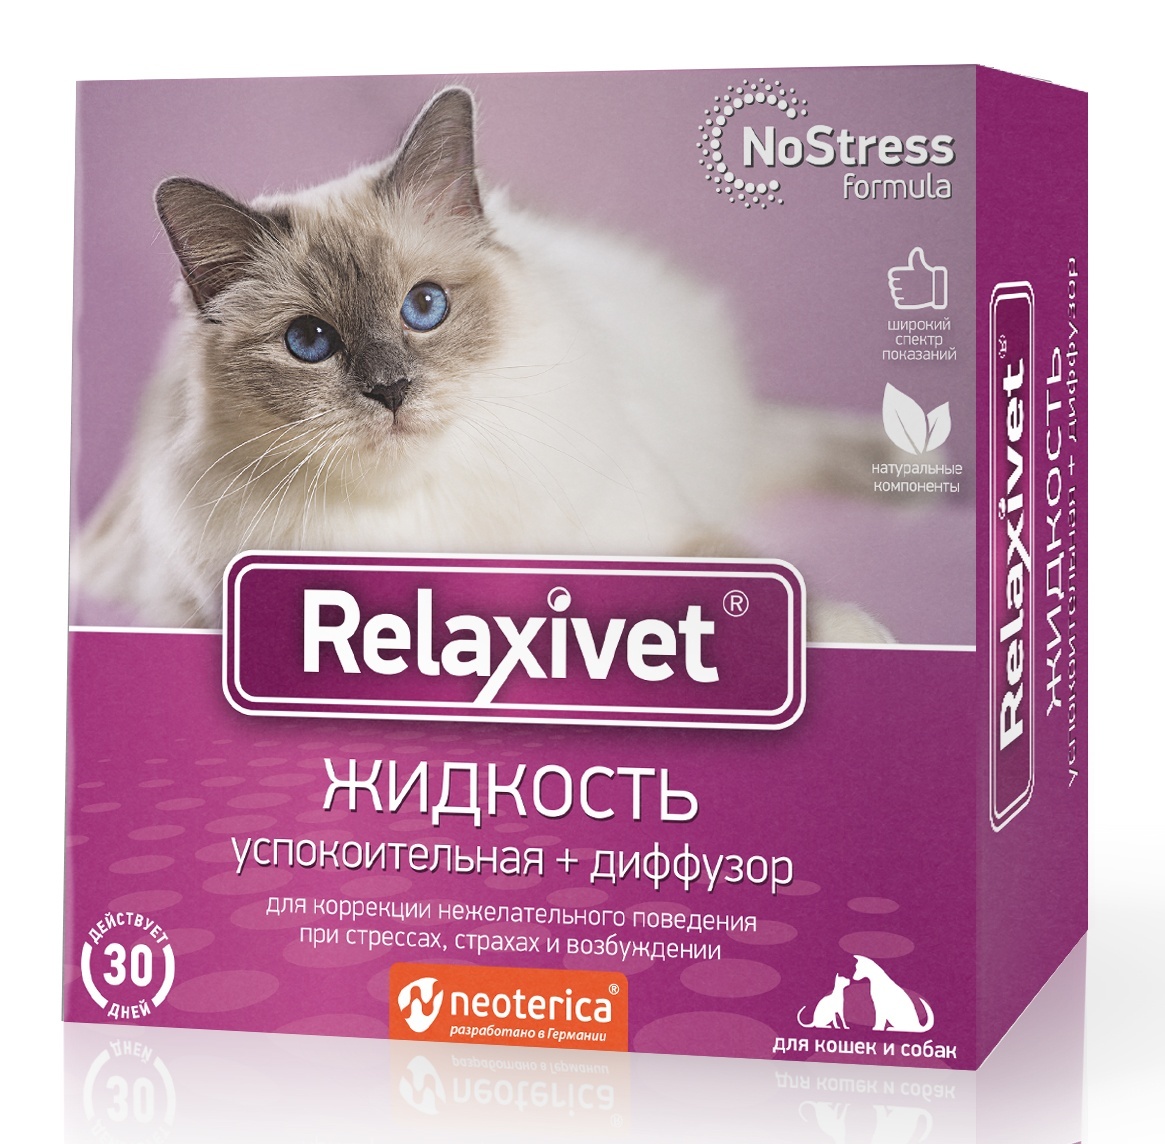 Relaxivet Relaxivet relaxivet Жидкость успокоительная + диффузор 45мл (120 г) relaxivet жидкость успокоительная диффузор для собак и кошек 45 мл